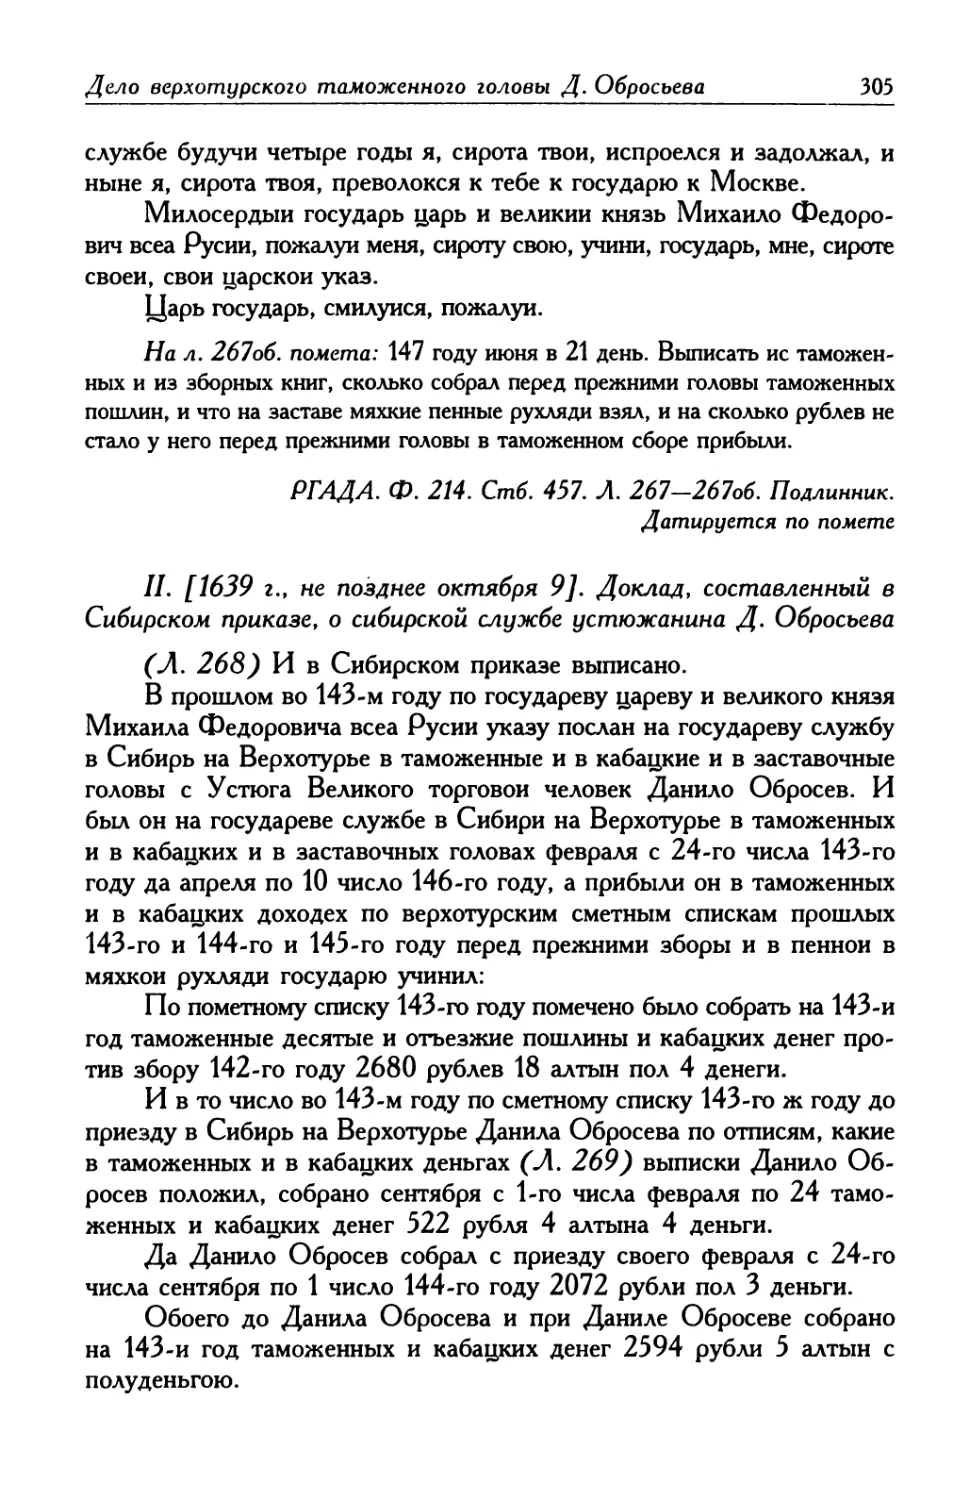 II. [1639 г., не позднее октября 9]. Доклад, составленный в Сибирском приказе, о сибирской службе устюжанина Д. Обросьева